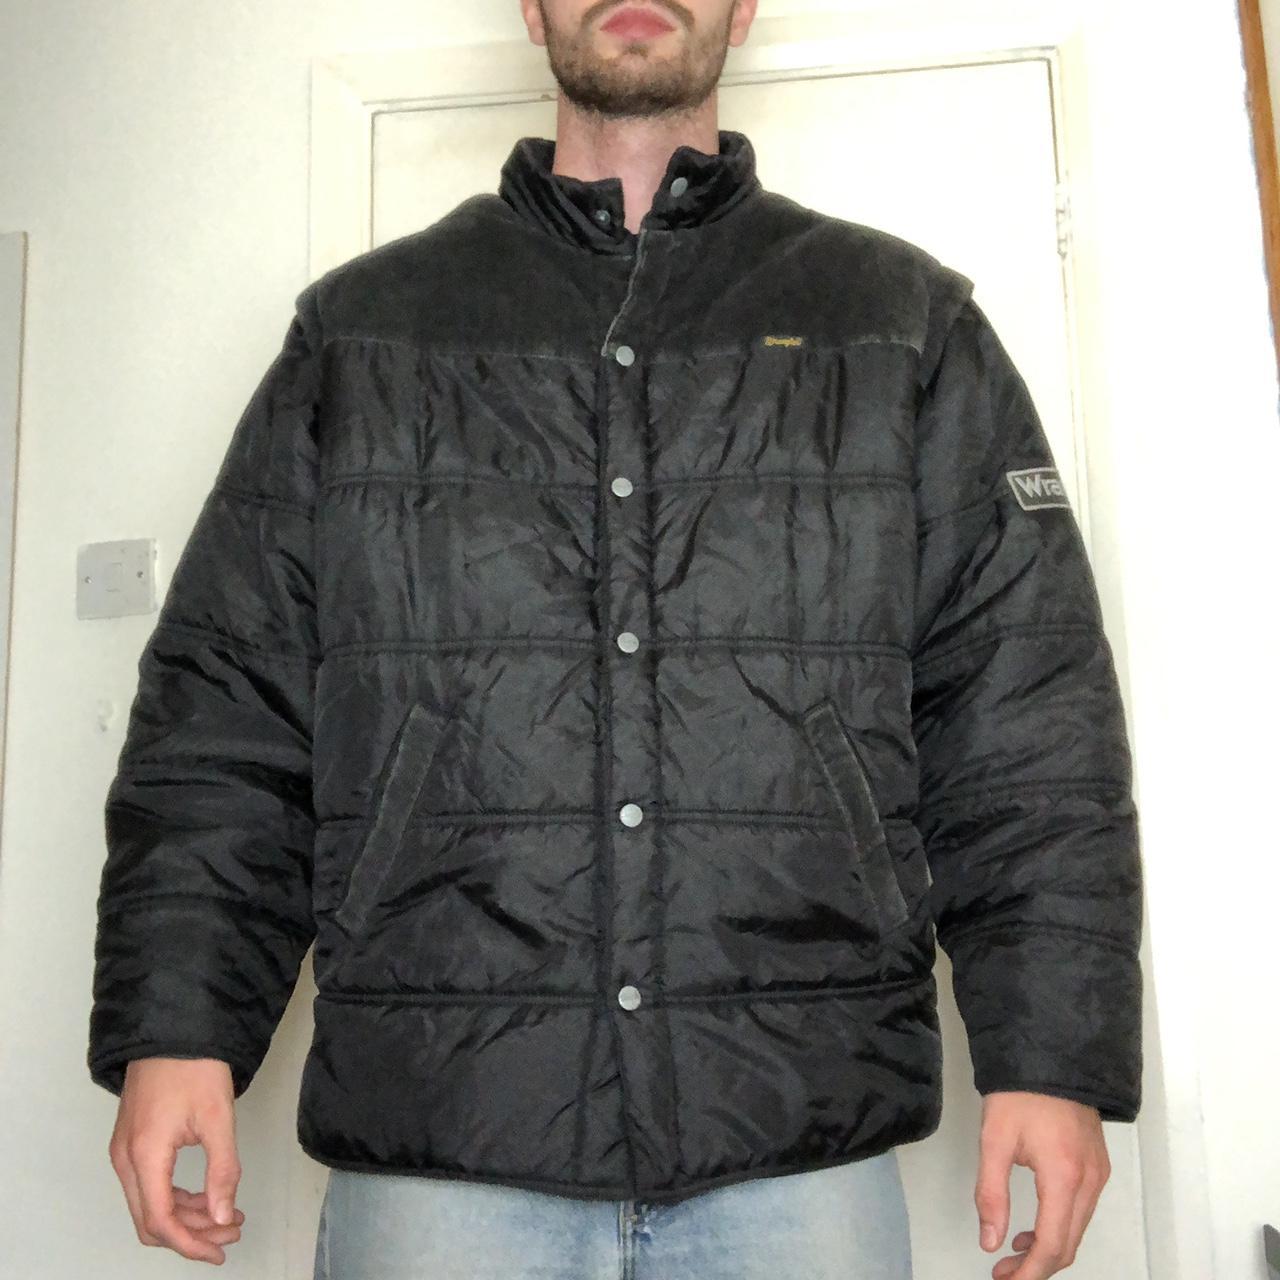 Black Puffer Jacket. Black Wrangler Coat, loads of... - Depop